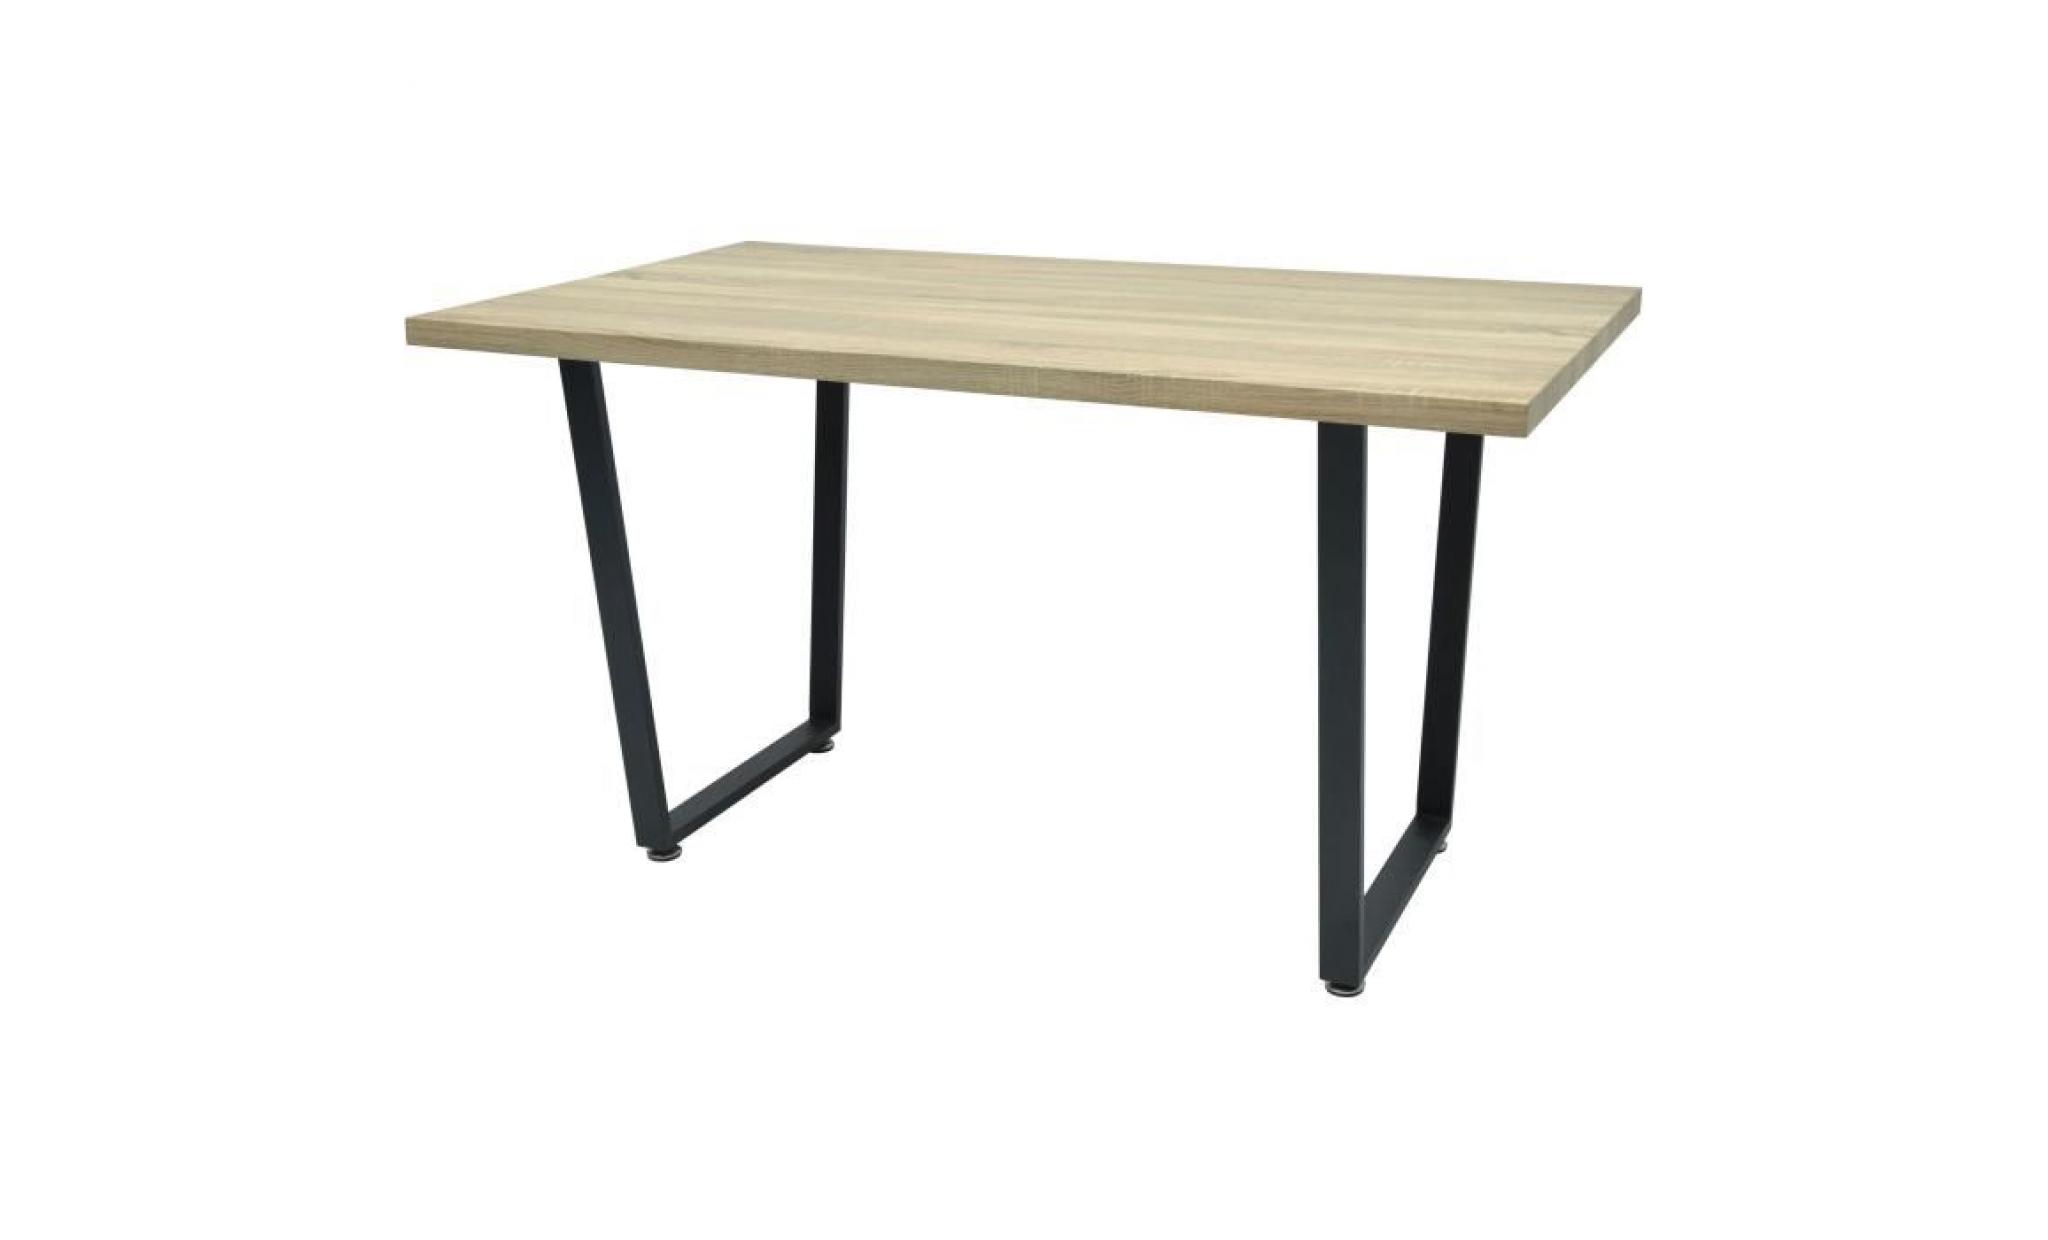 donna table à manger de 6 à 8 personnes   industriel   aspect bois verni   l 140 x l 80 cm